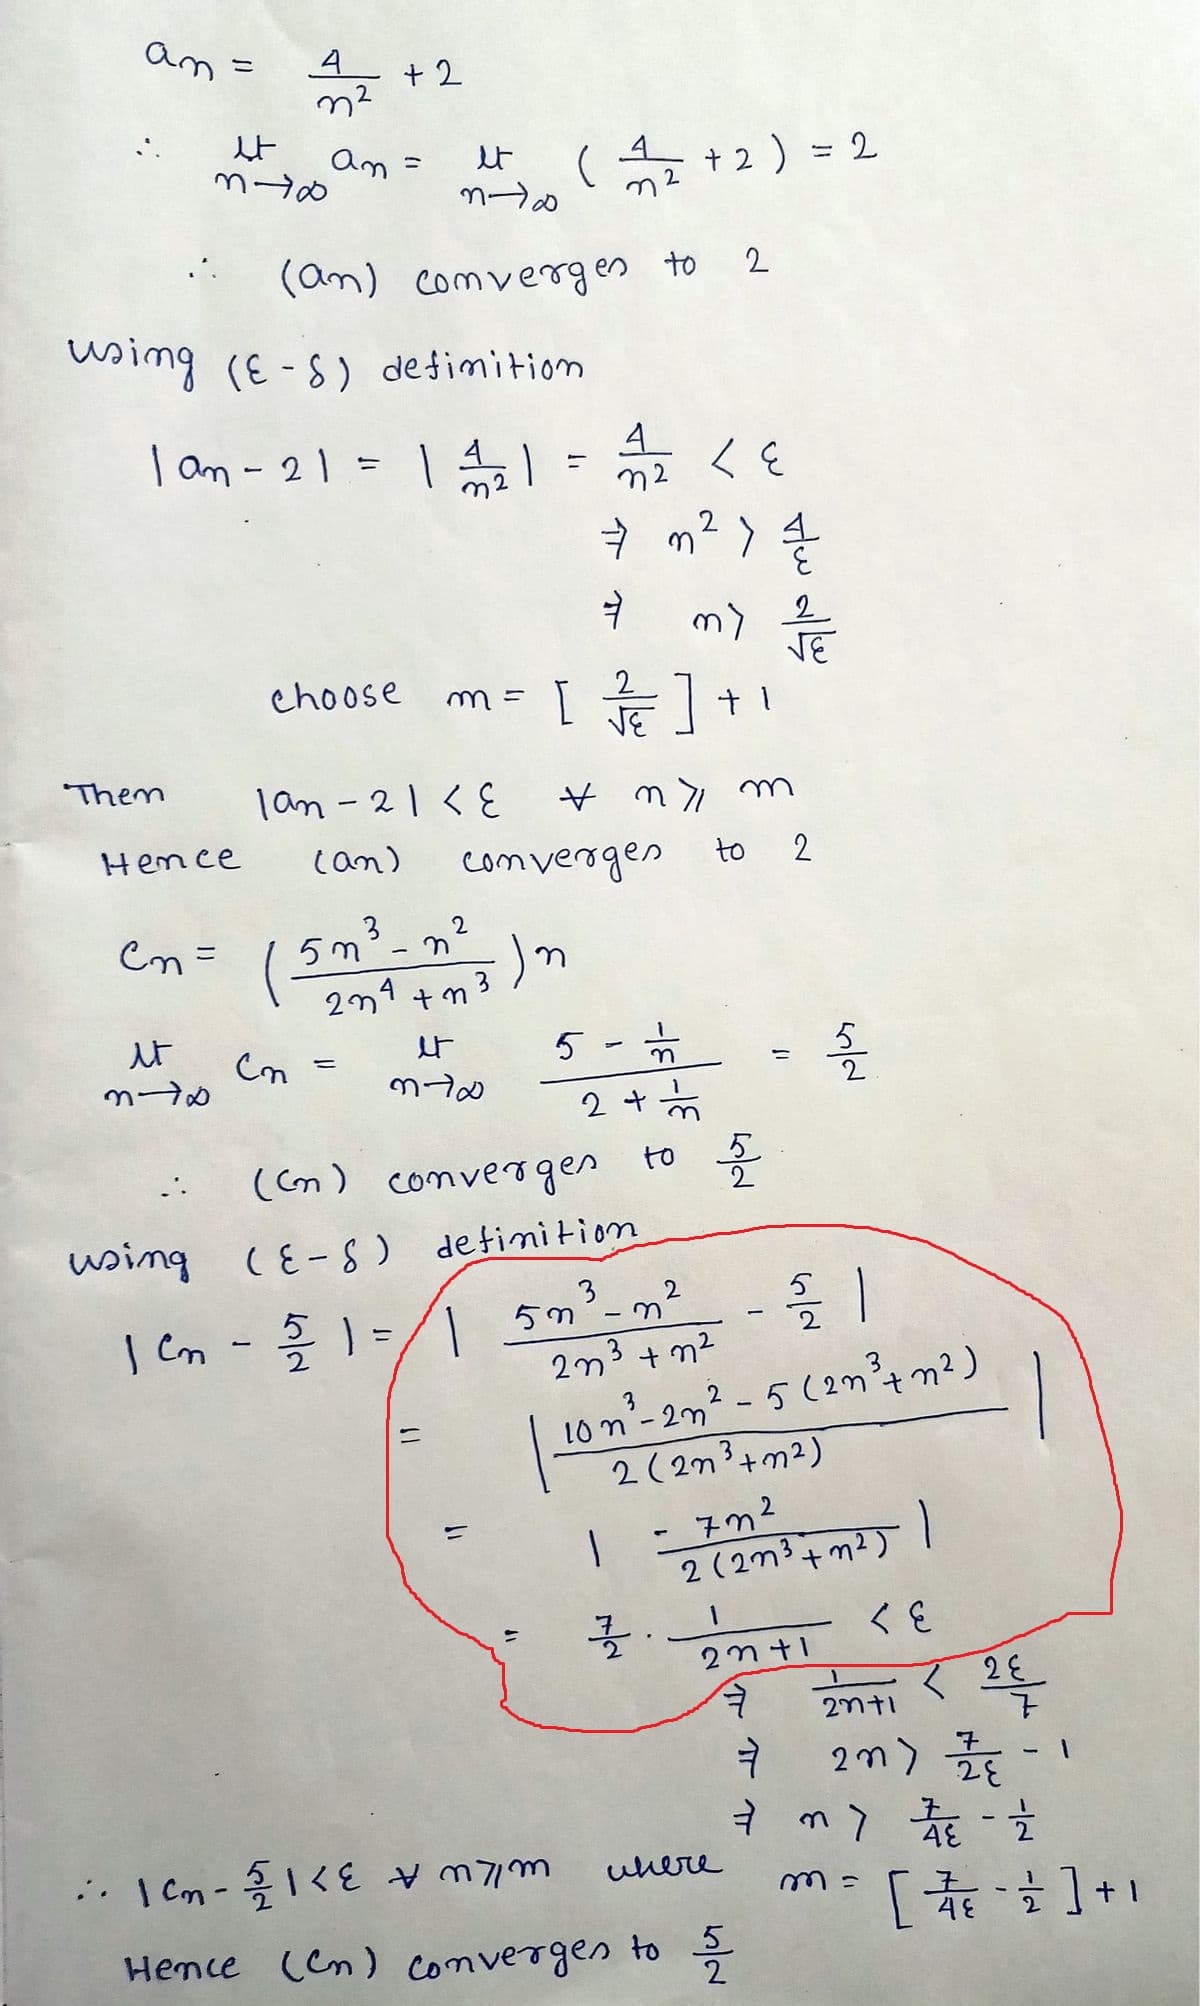 an.
Them
Hence
en=
it
370
...
4
m²
et
3-6
using (ES) definition
1am - 21 = 11/1/21
using
+2
an =
et
m-10
(an) convergen to 2
1an-21 < E
(an)
5m
⇒ m² > {/1/2
4
ㅕ
choose m = [/]+
* ny m
(n =
=
n
2n4+n
et
mto
2
(1/1/2+2) = 2
11
convergen
;-)m
=
3
11
4
A2 LE
रह
n2
5 -
1
| Cm - 5/2 1 = // | 5n
2 + ½
(cm) converges to 5
(E-S) definition
my / E
+1
2
to 2
2n3 +n²
2/21
3
10 n²³-2n ² - 5 (2m² + m²)
2 (2n³+ m²)
1 =7m²
32.
2 (2m³ +m²)
23+1
7
5/2
ㅕ
• 1²₂-5/<
инече
Hence (Cn) converges to 5/2
1
<६
<2 E
20+1
2m) 27/1
ㅕ
7 m 2 - 2
4
[ 17/18 - 2] + 1
48